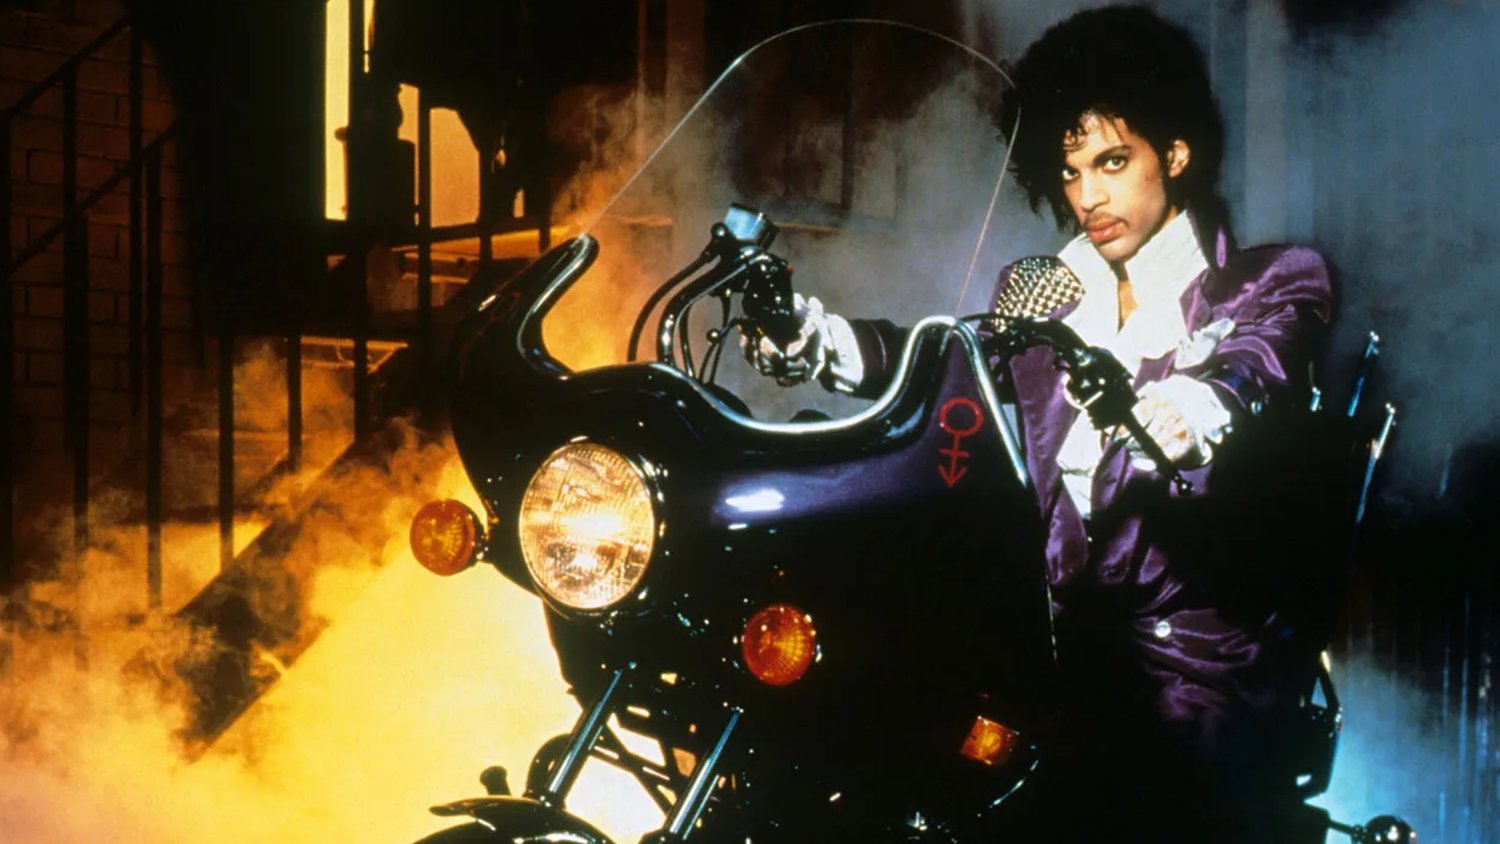 Le film classique de Prince de 1984, PURPLE RAIN, fait l'objet d'une adaptation musicale sur scène